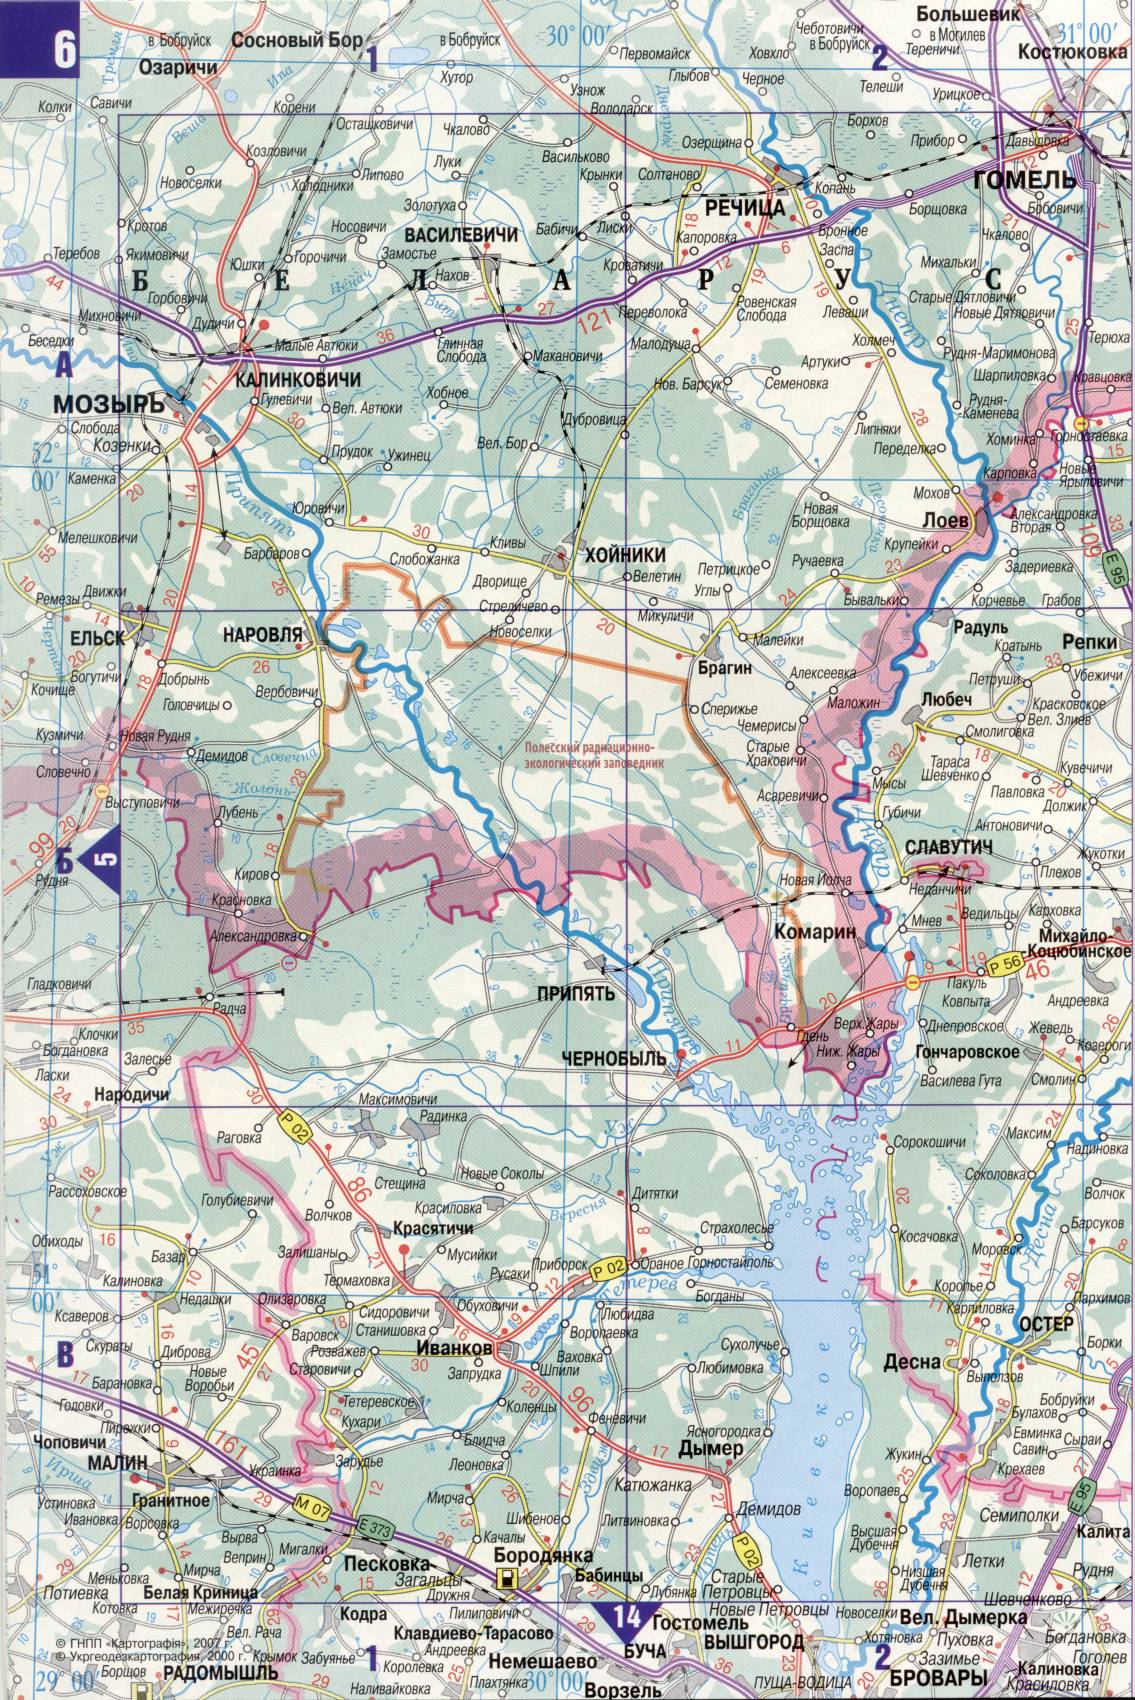 Карта Украины. Подробная карта дорог Украина из автомобильног атласа. скачать бесплатно, E0